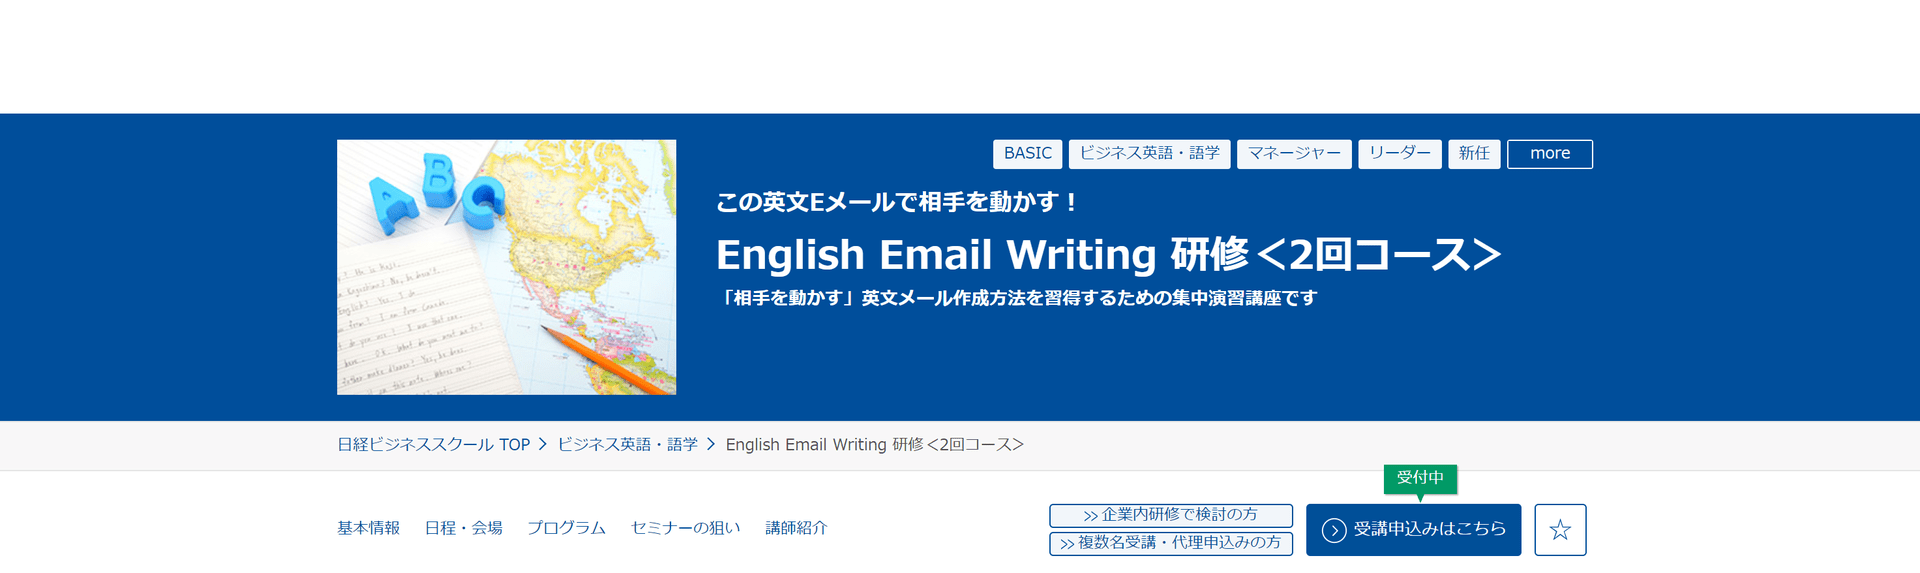 日経ビジネススクール  English Email Writing 